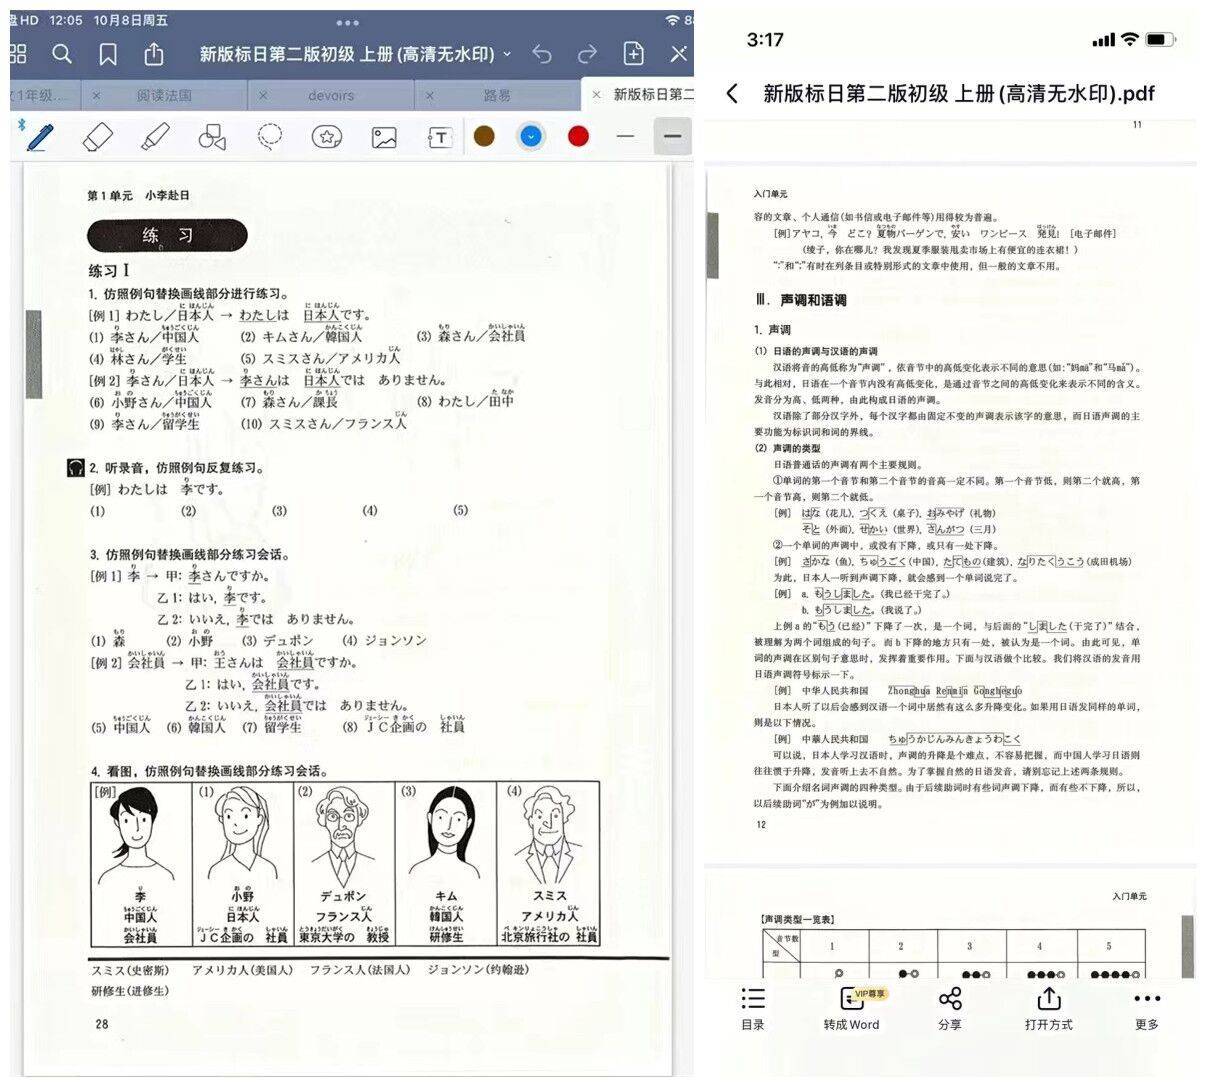 新标准日本语初级电子书_手机搜狐网